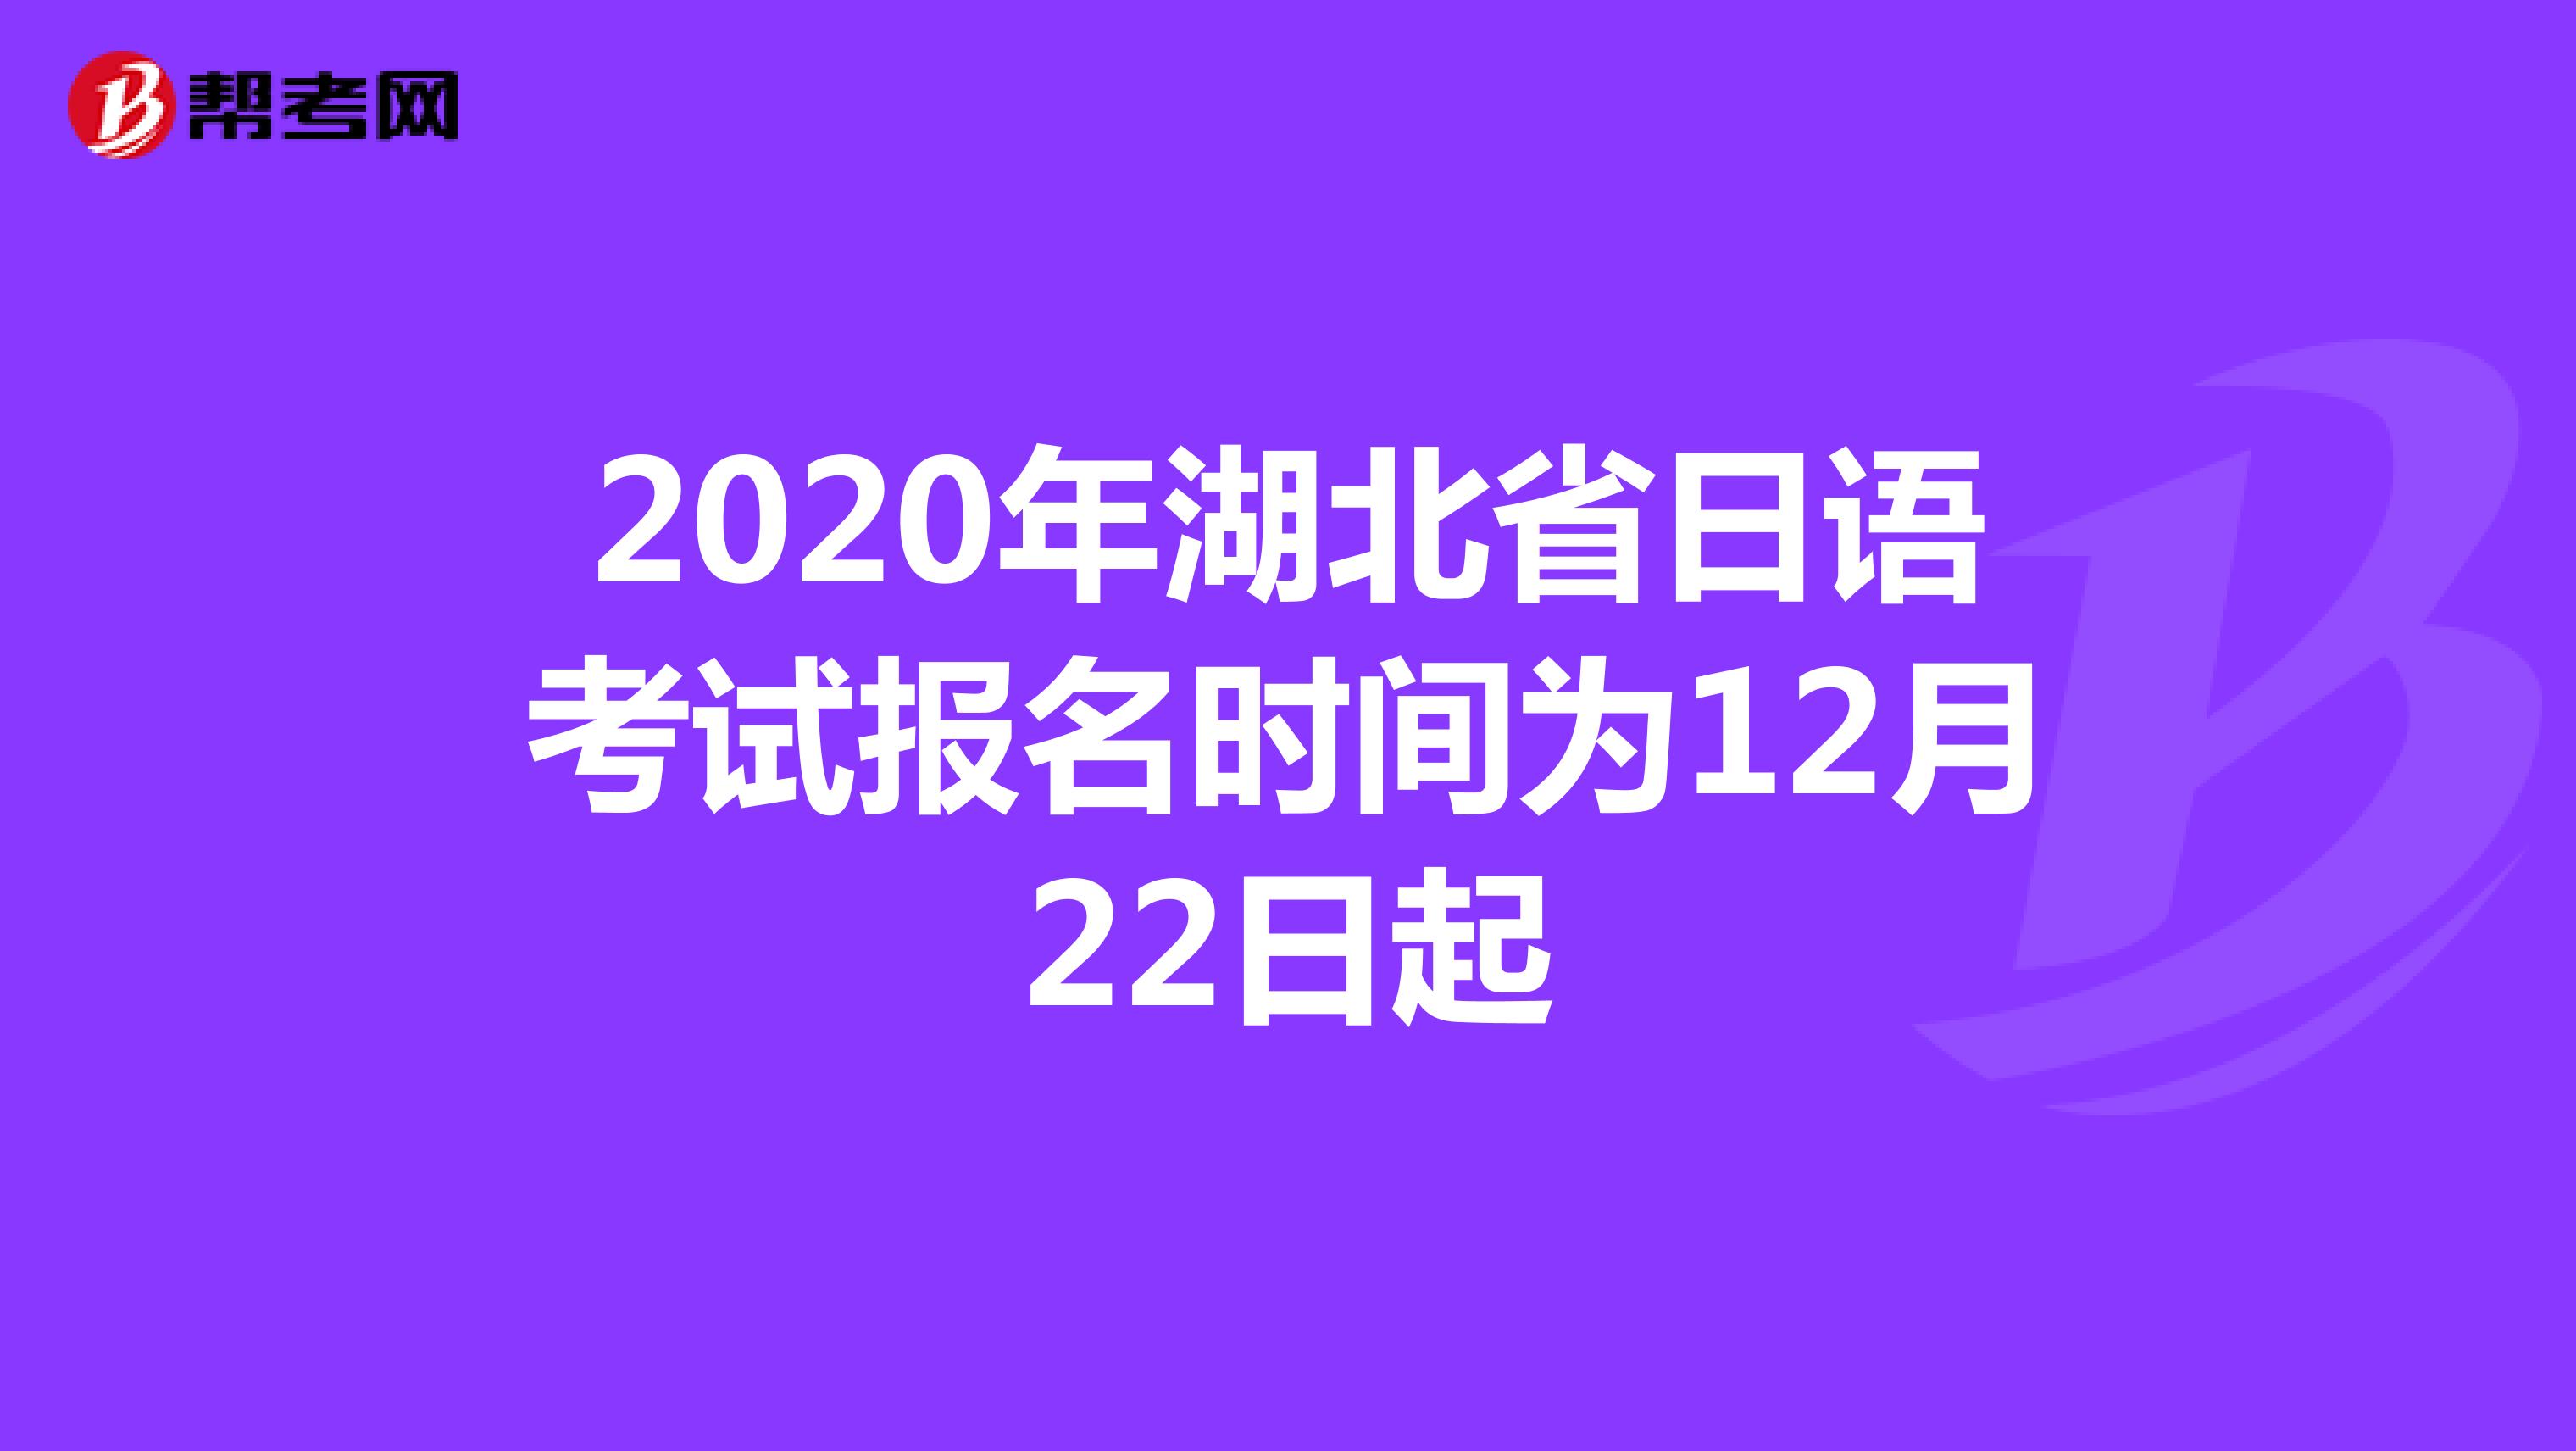 2020年湖北省日语考试报名时间为12月22日起